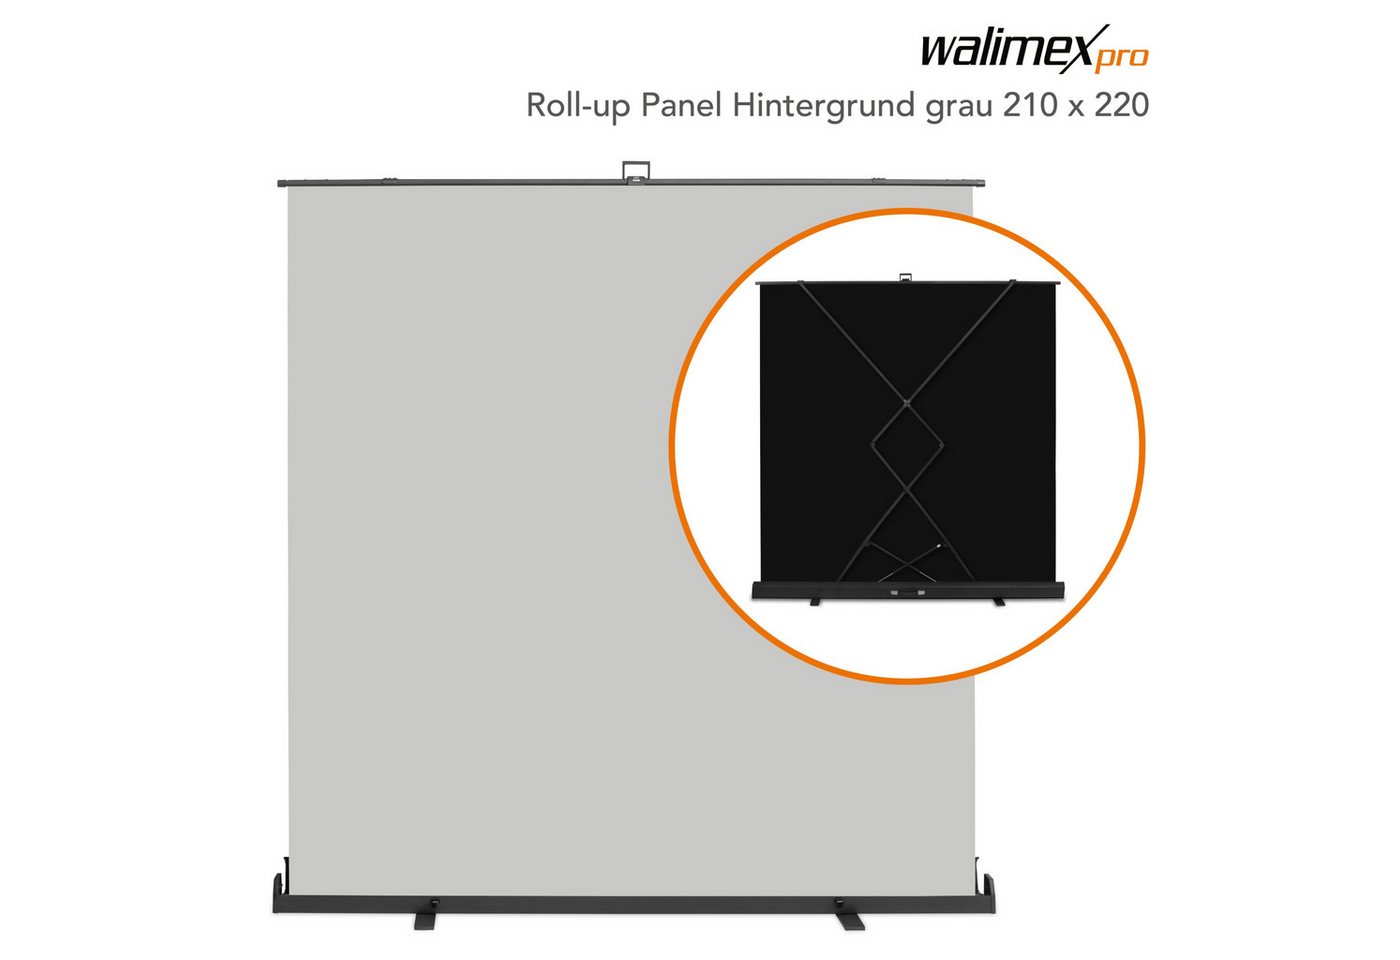 Walimex Pro Fotohintergrund Roll-up Panel Hintergrund grau 210x220 von Walimex Pro